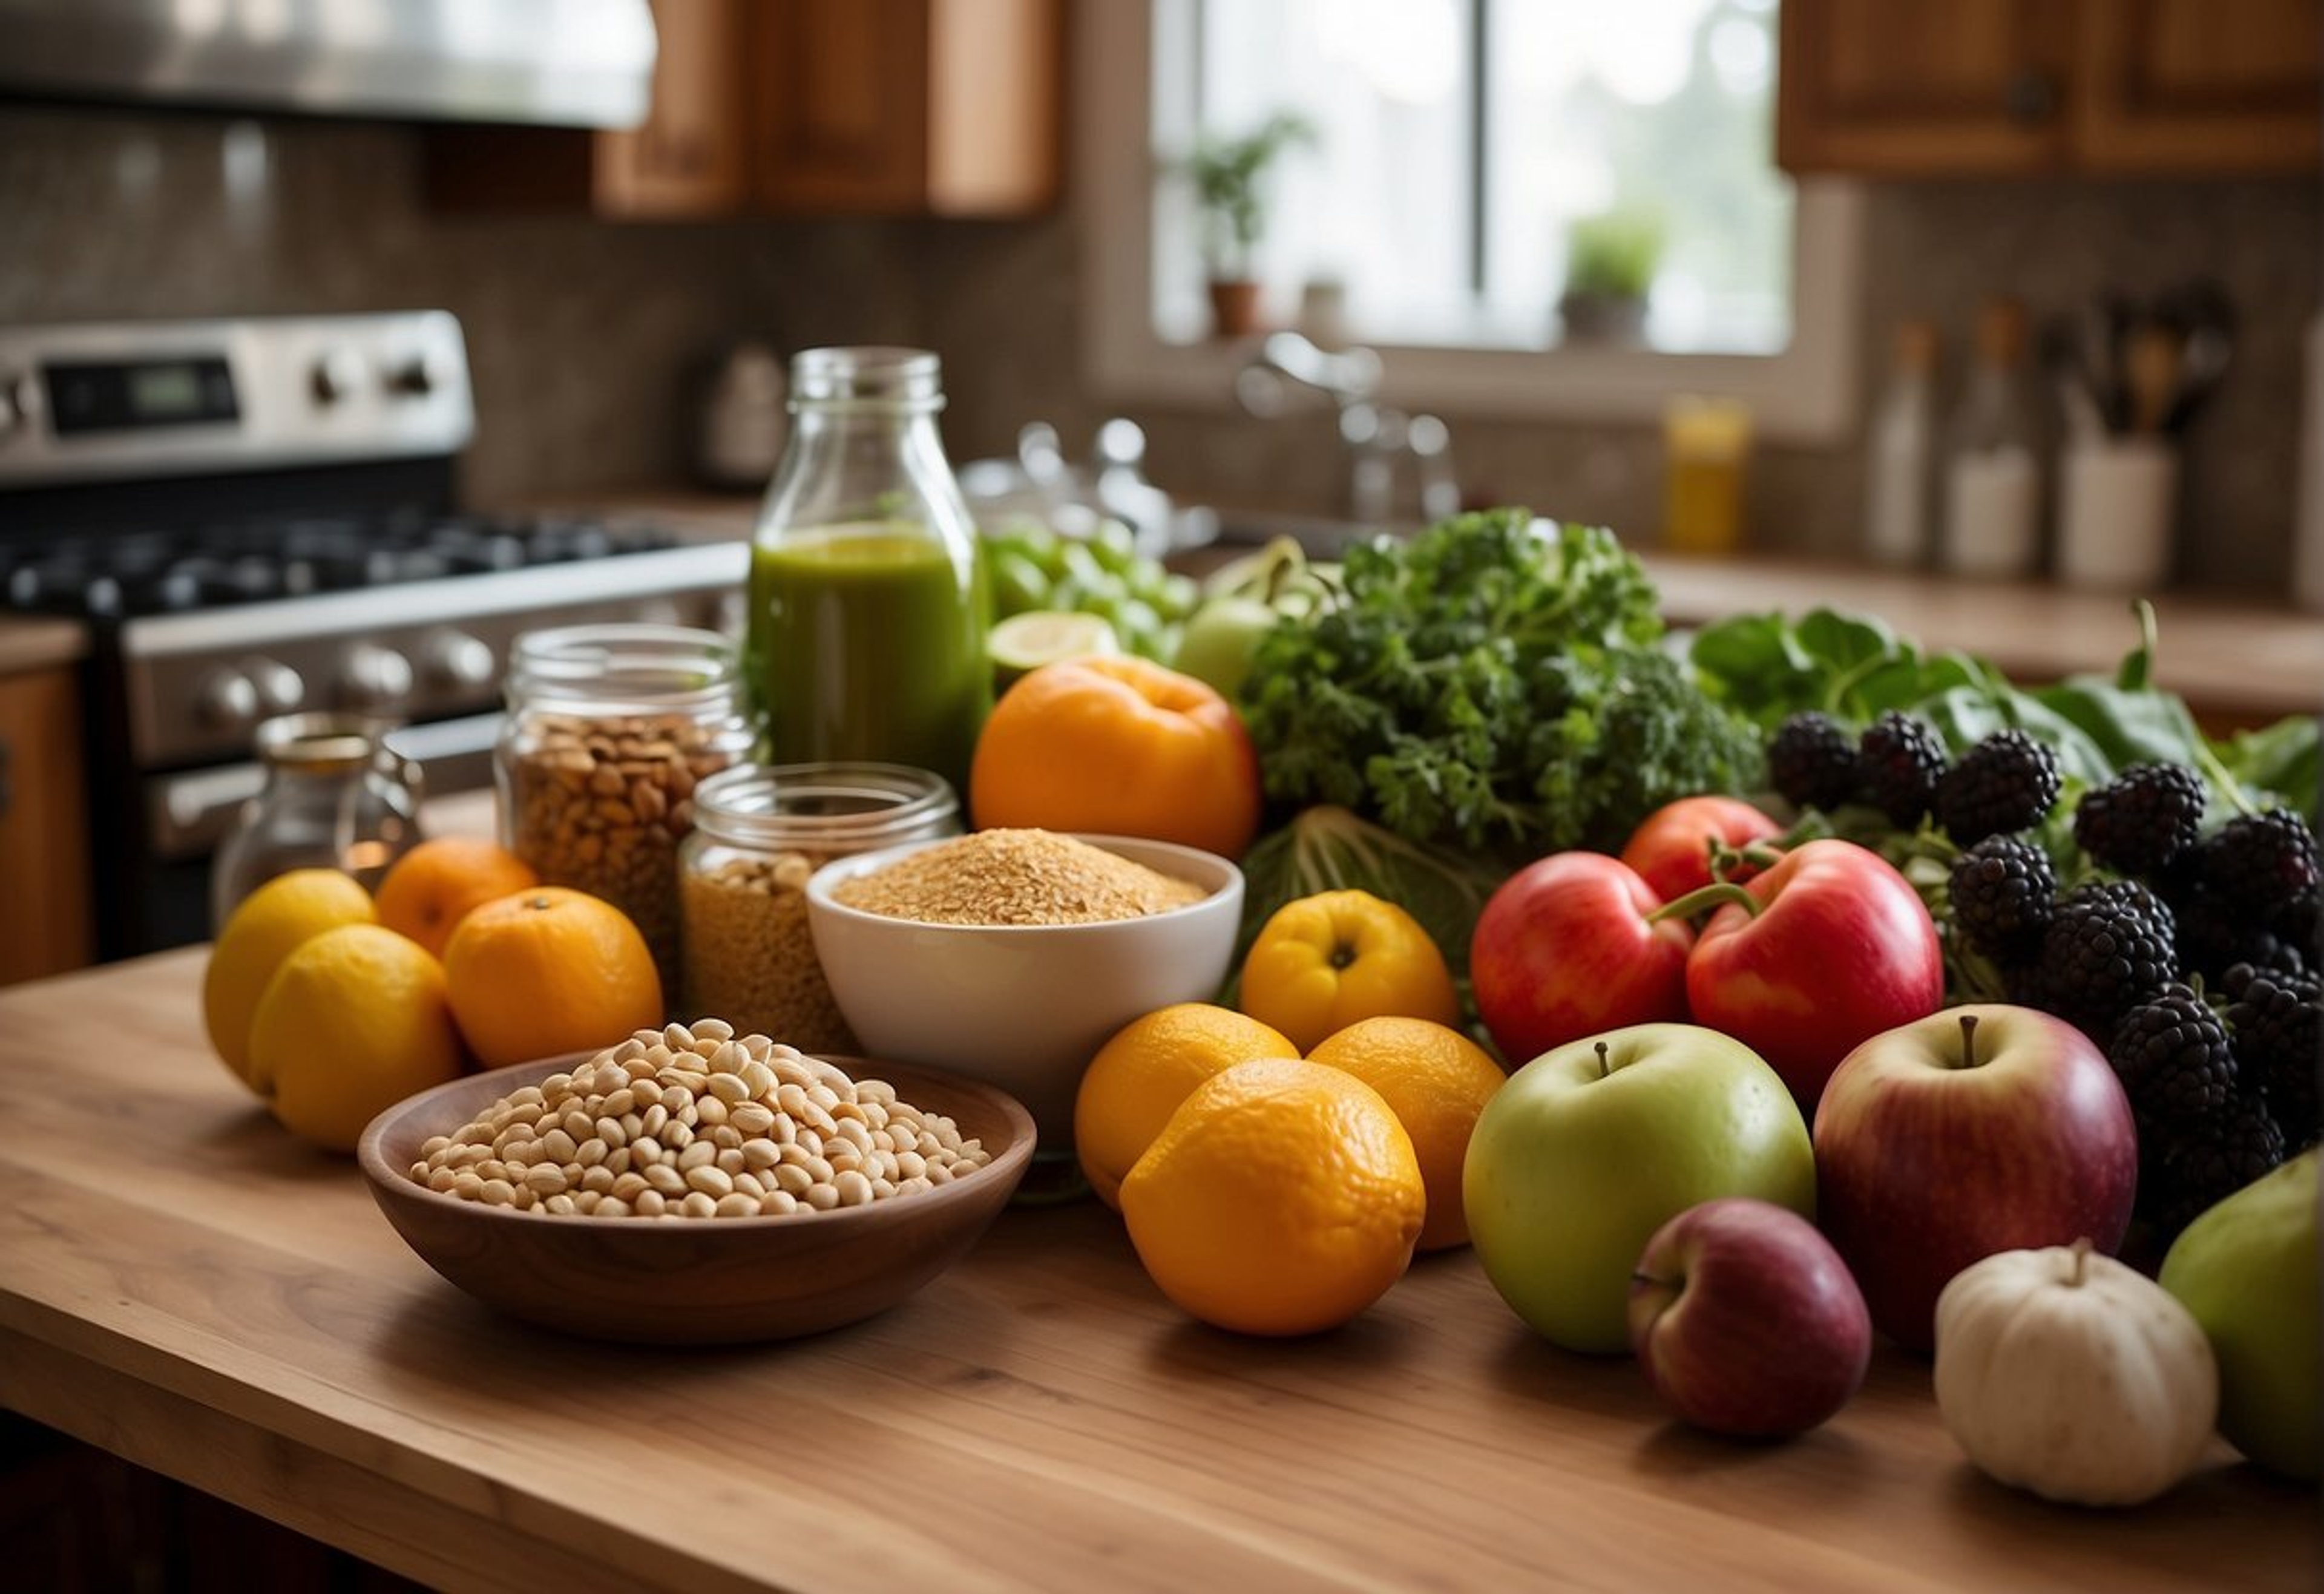 Conseils-pour-integrer-progressivement-plus-de-produits-bio-dans-votre-alimentation-quotidienne-Comment-adopter-une-alimentation-plus-saine-et-ecologique